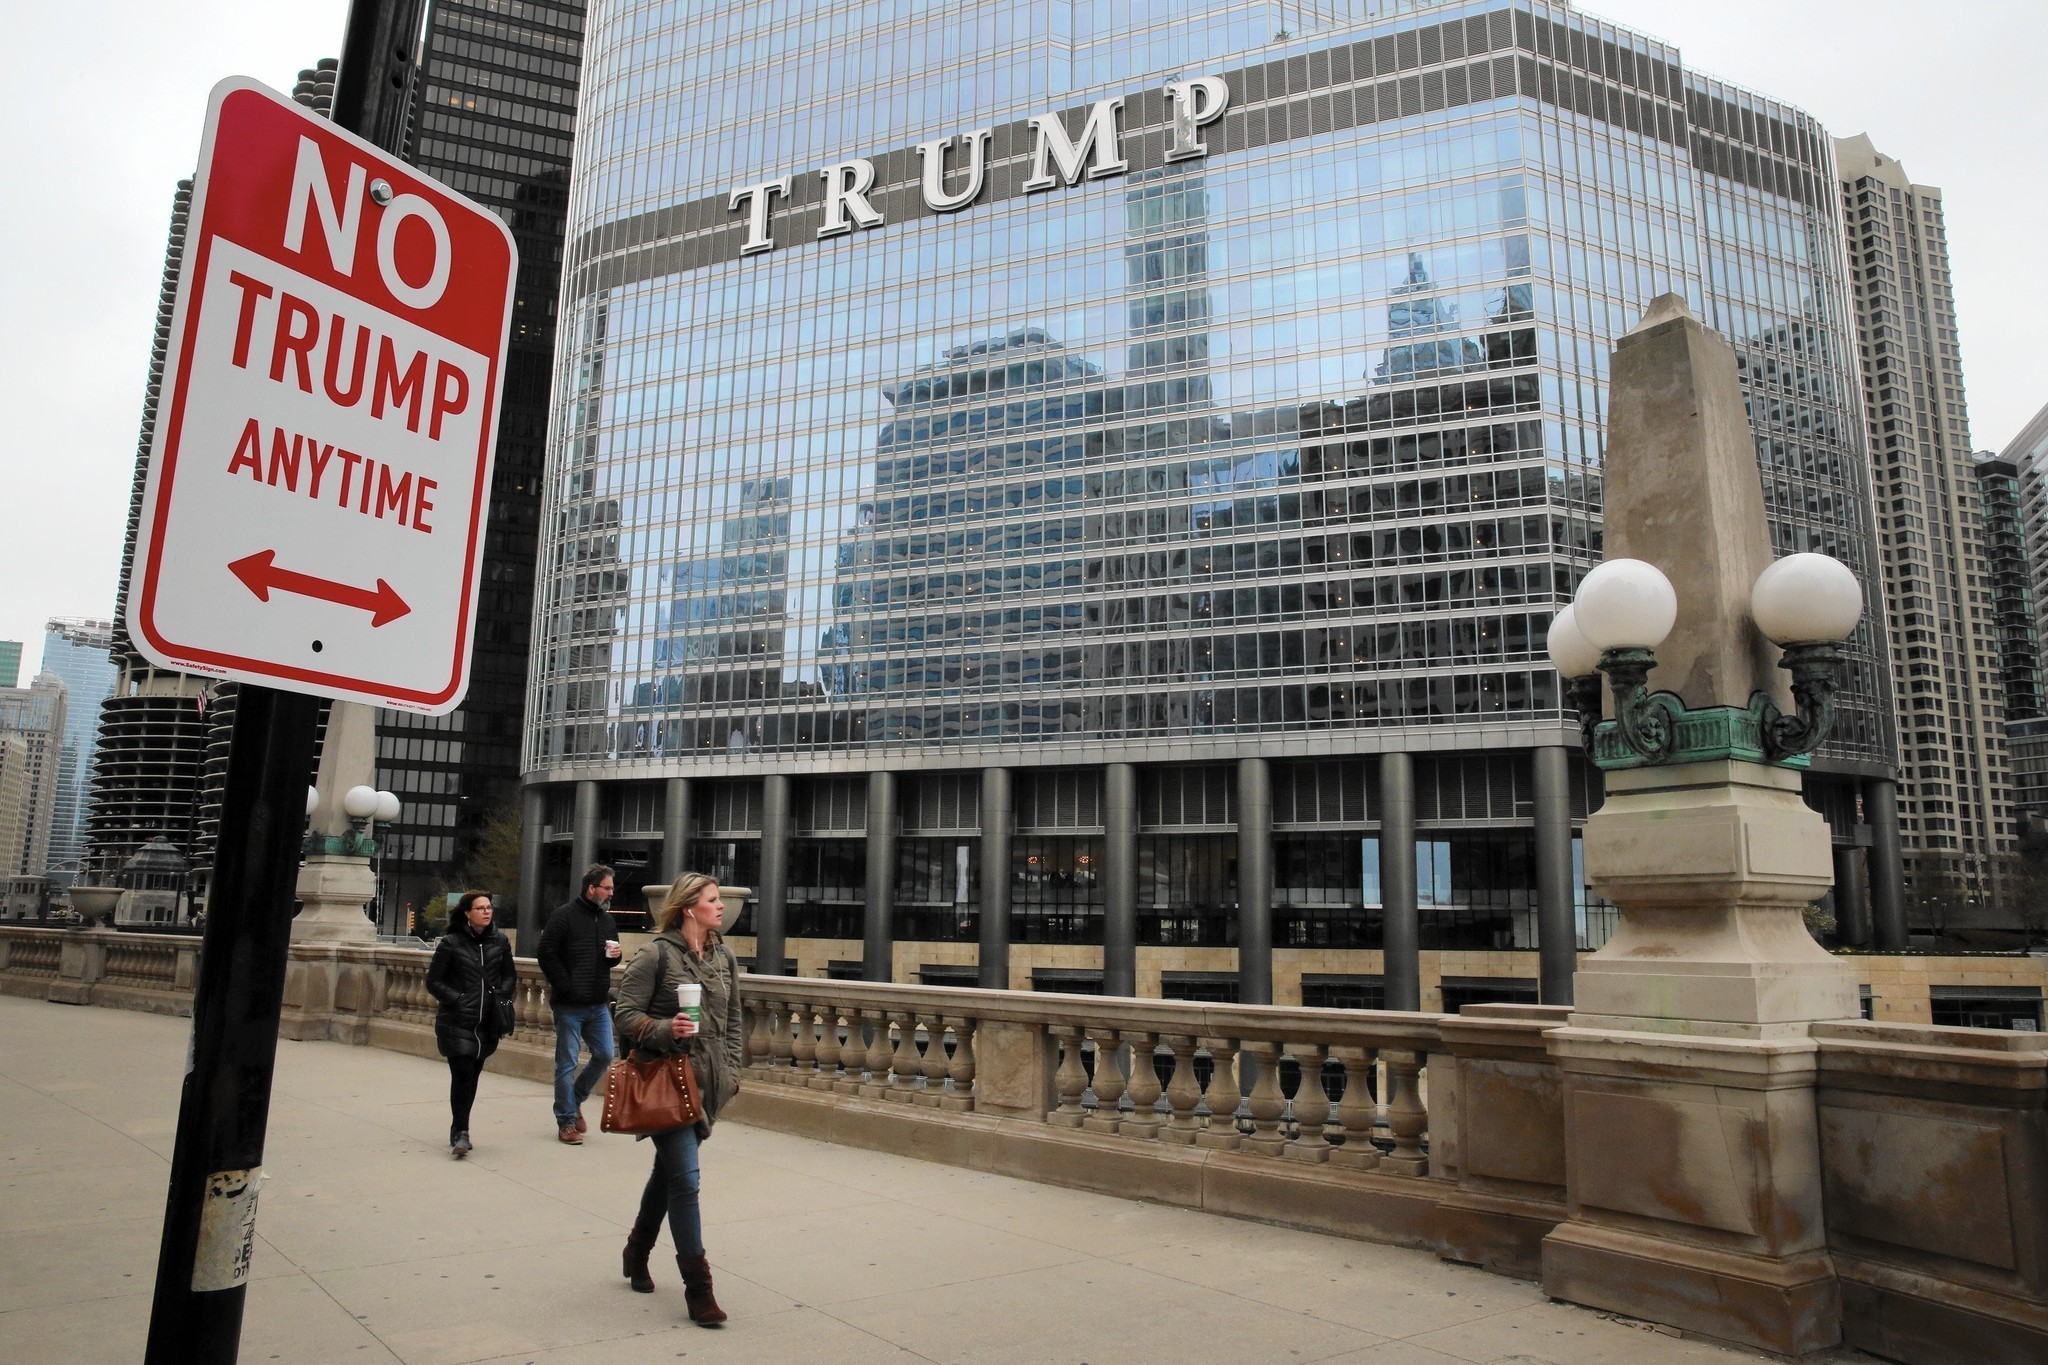  Ponen mensajes contra Trump en señales de tránsito